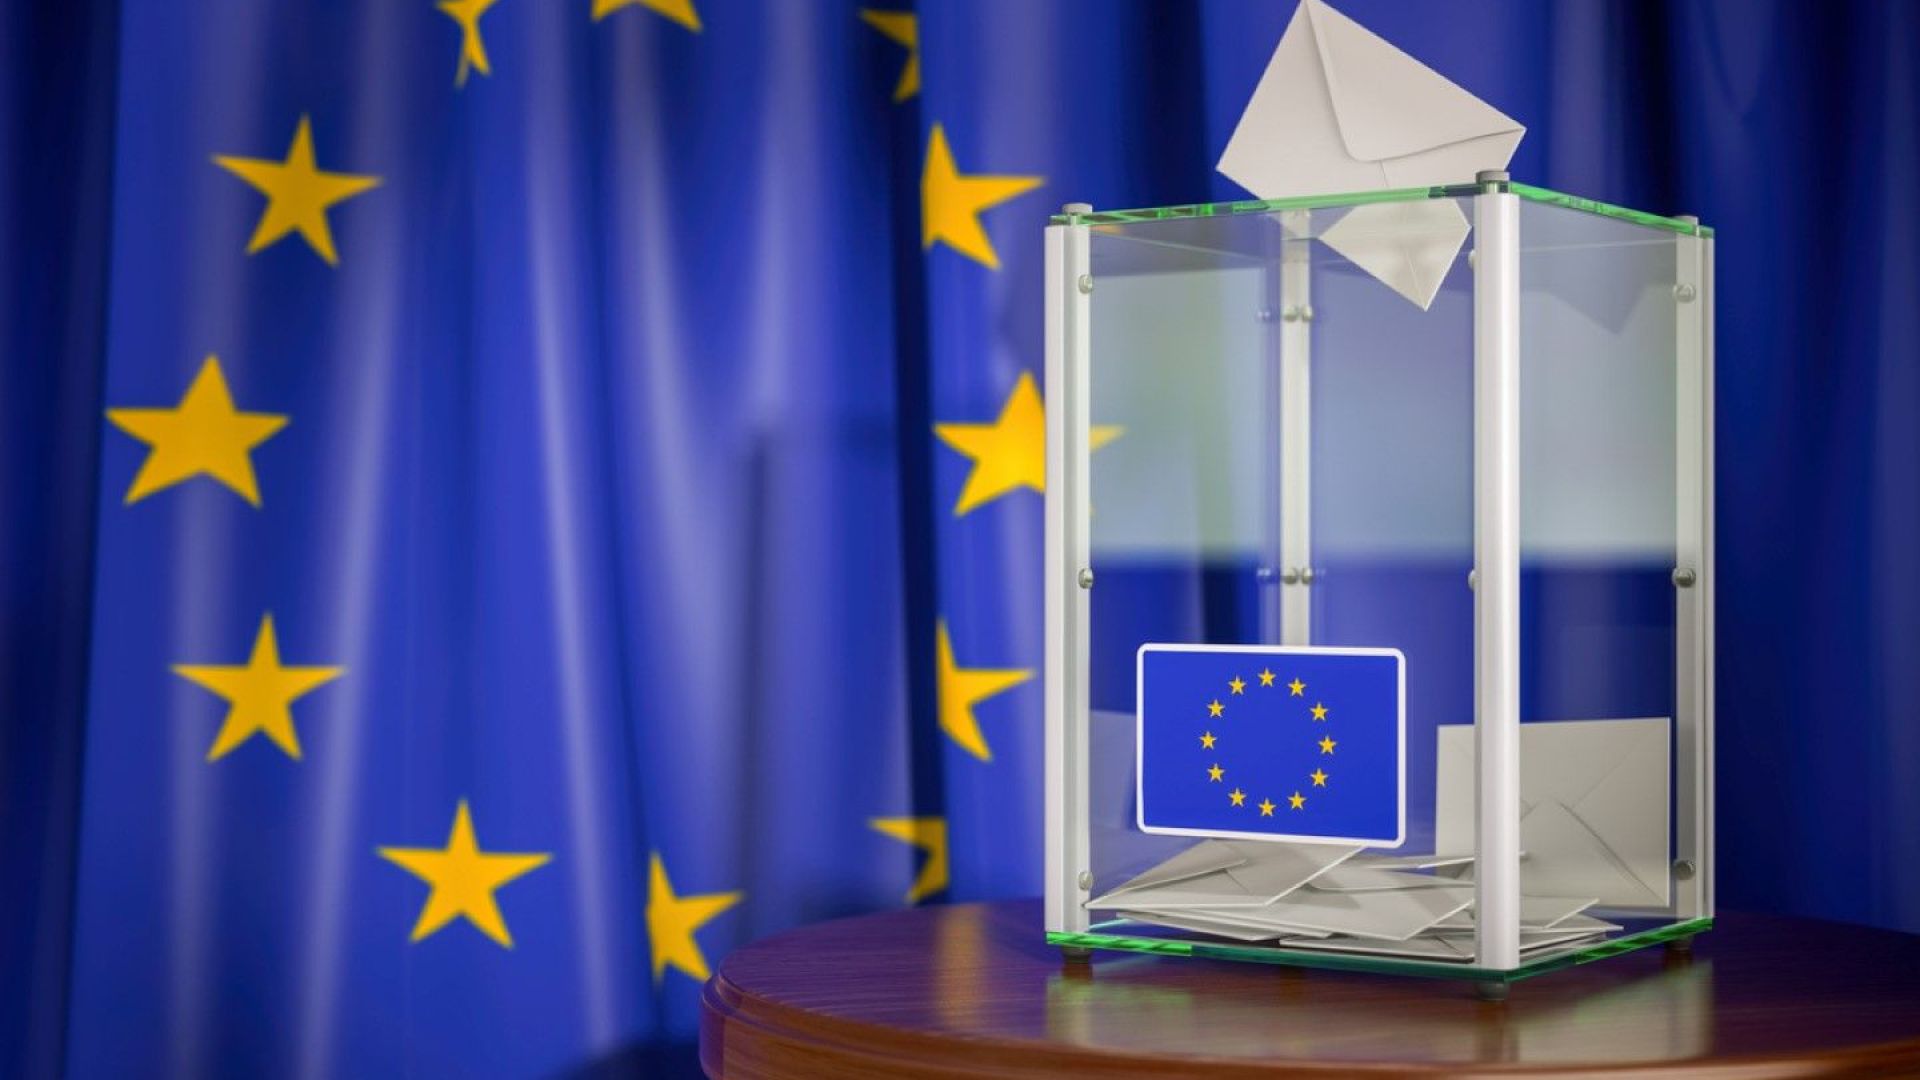 Мозъчен тръст прогнозира  - завой надясно в Европа на евроизборите и проруски партии в ЕП